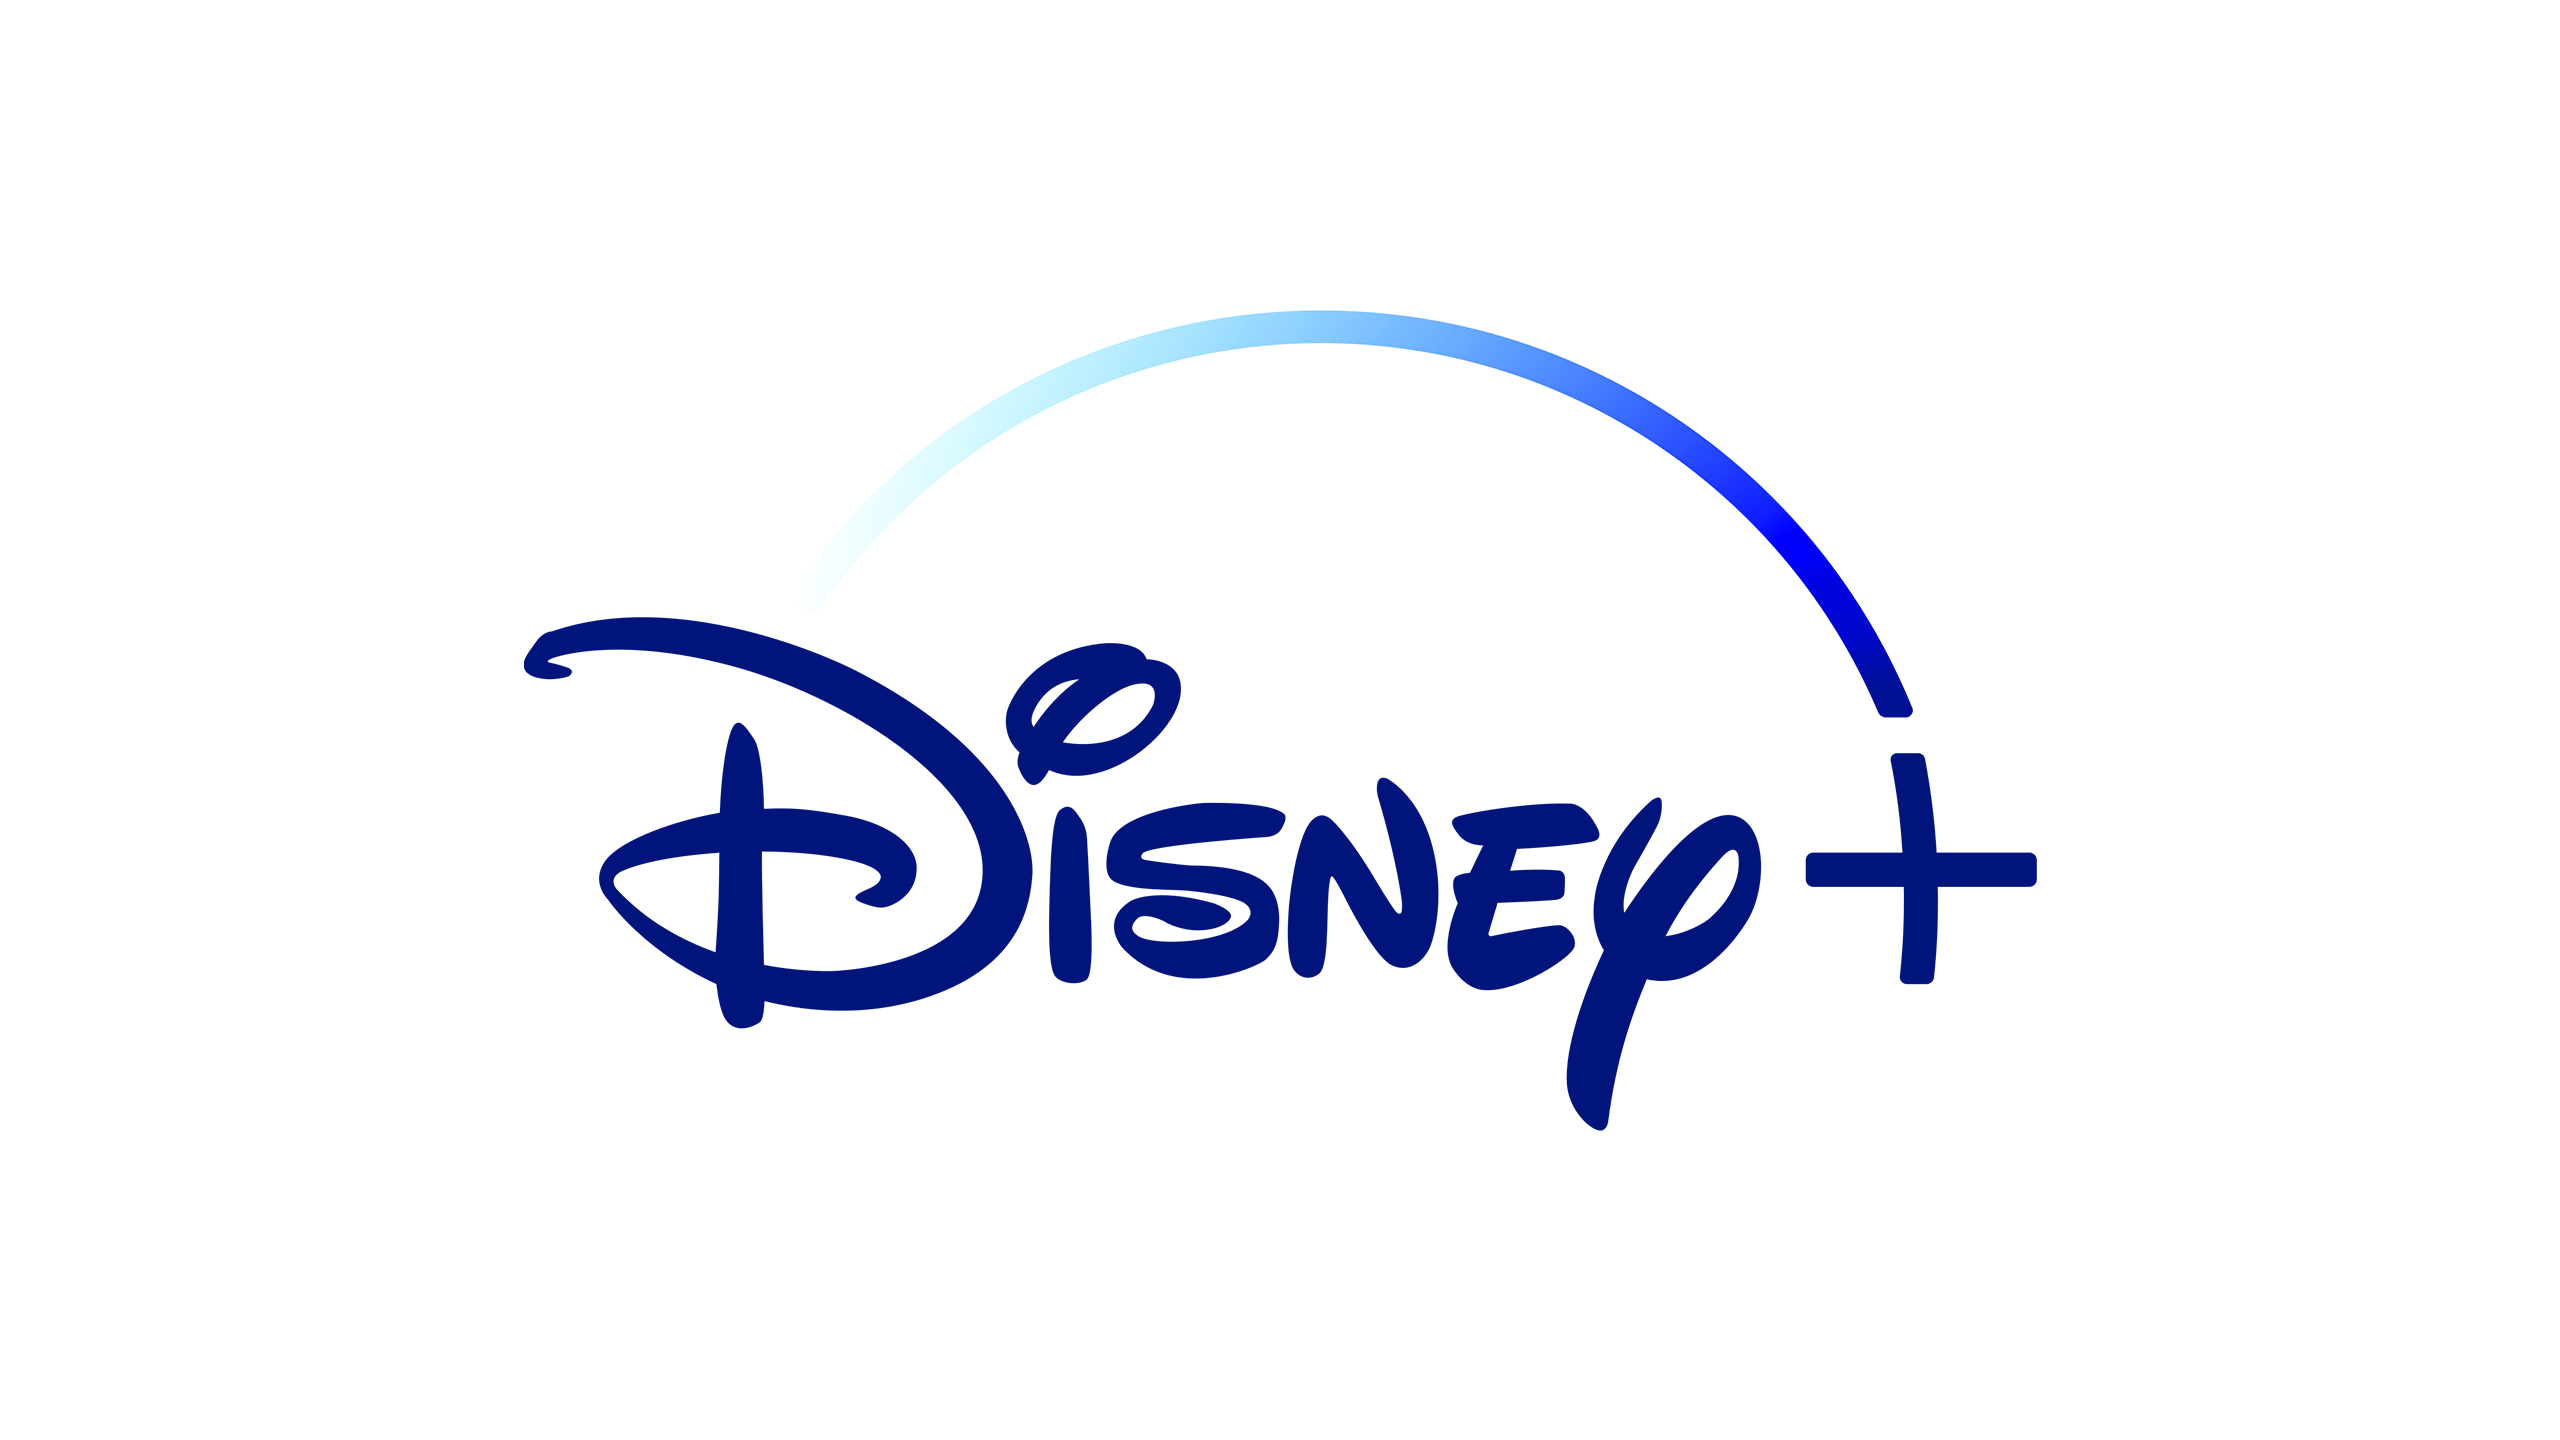 disney-logo.png